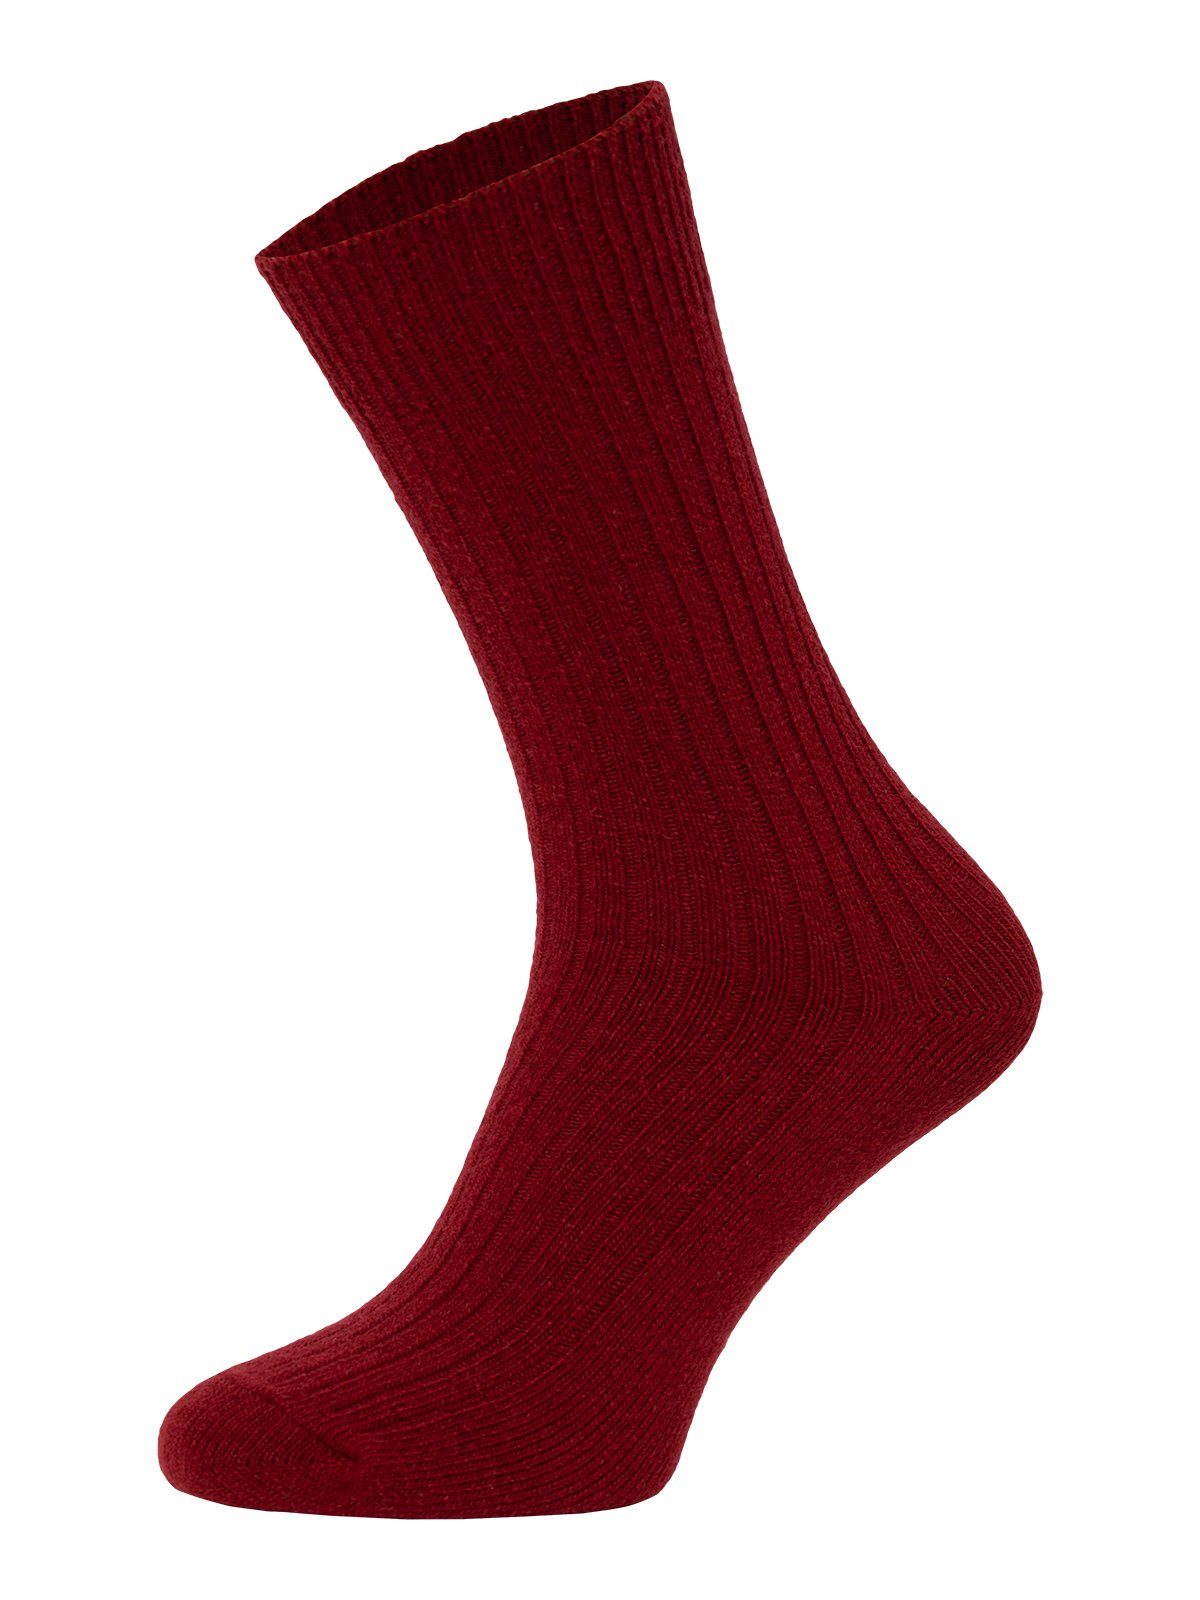 HomeOfSocks Socken Dünne Bunte Druckarm Dünn Bunt 72% Wollsocken Uni Weinrot Wollanteil Hochwertige mit Wollsocken